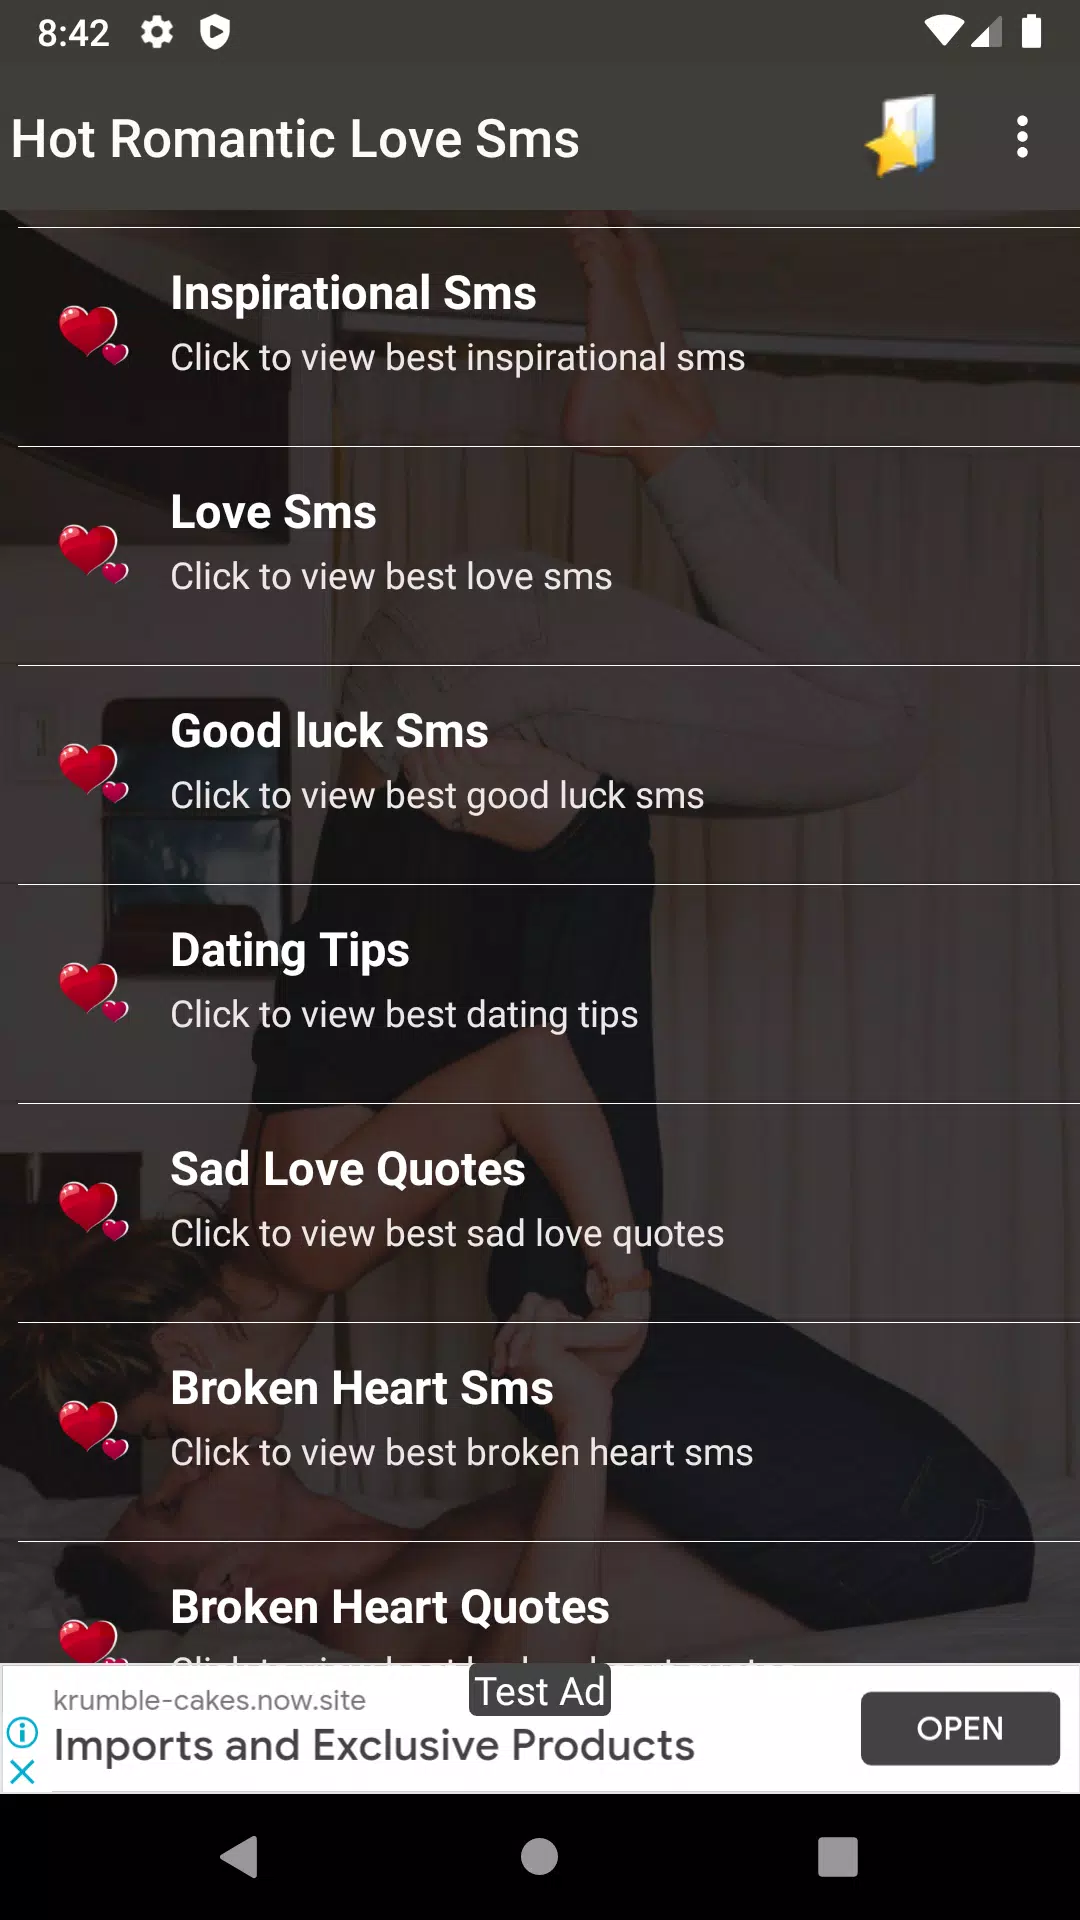 Hot Romantic Love Sms APK pour Android Télécharger